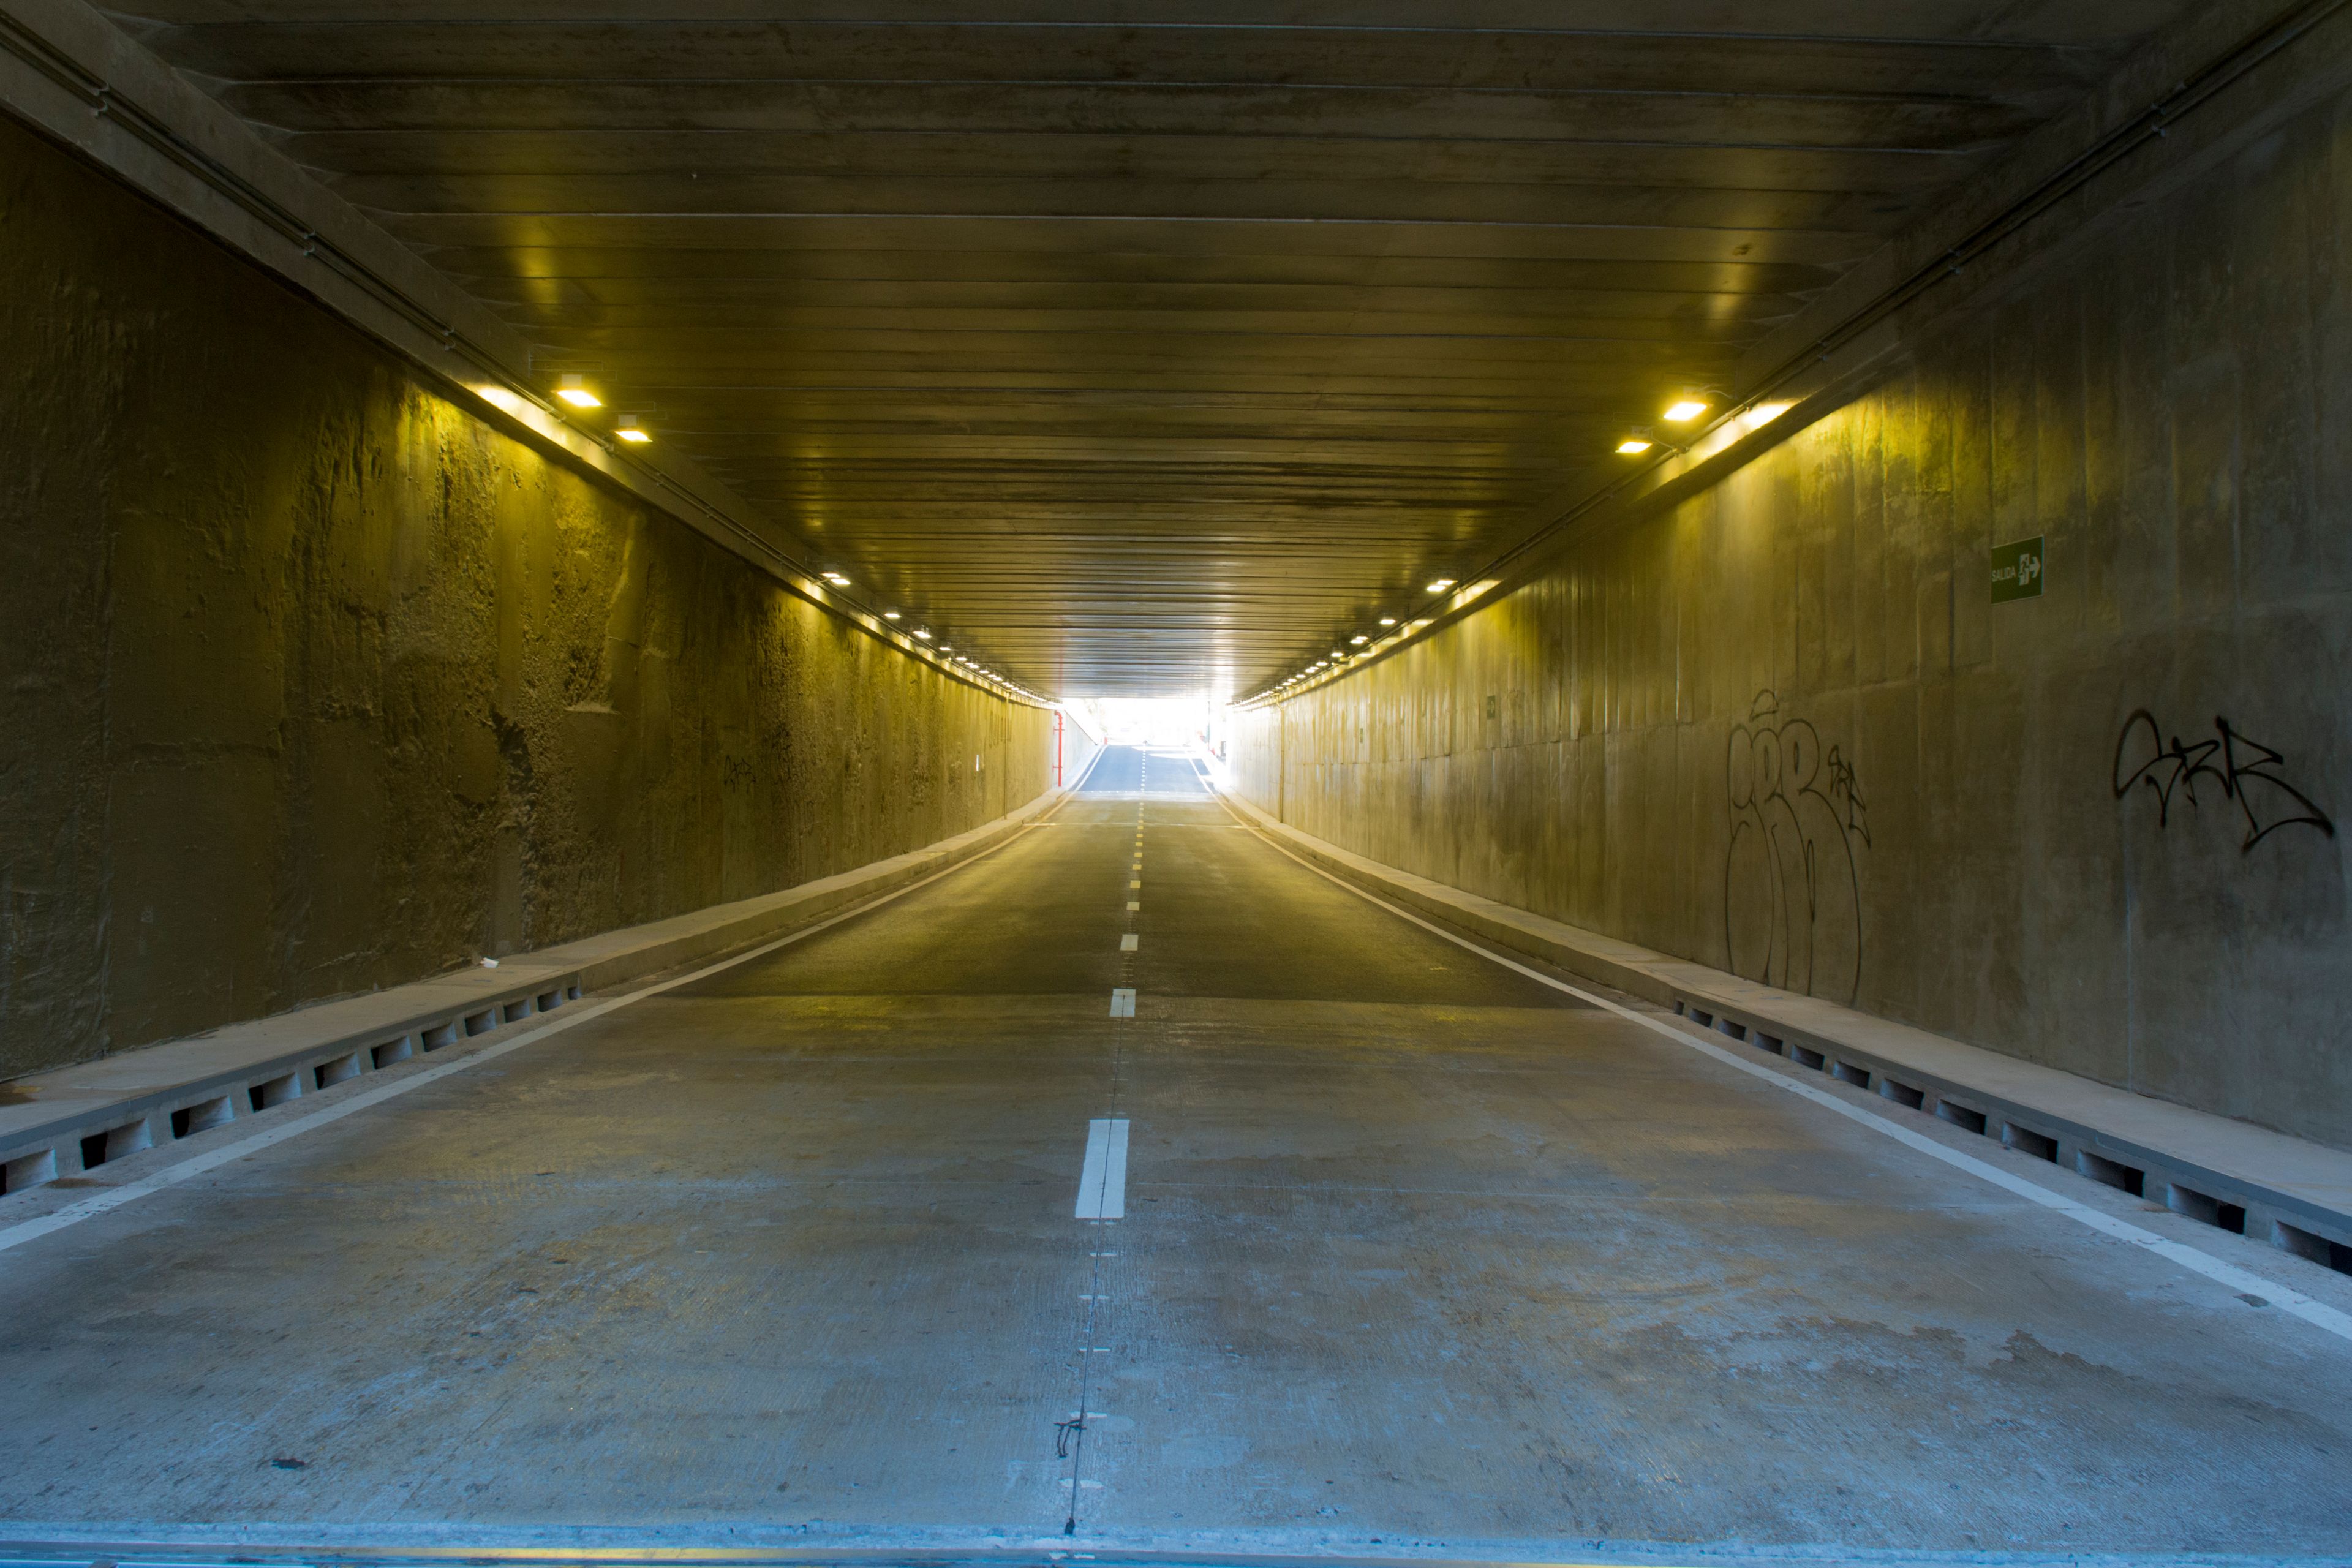 Vista interior del tunel con su iluminación encendida